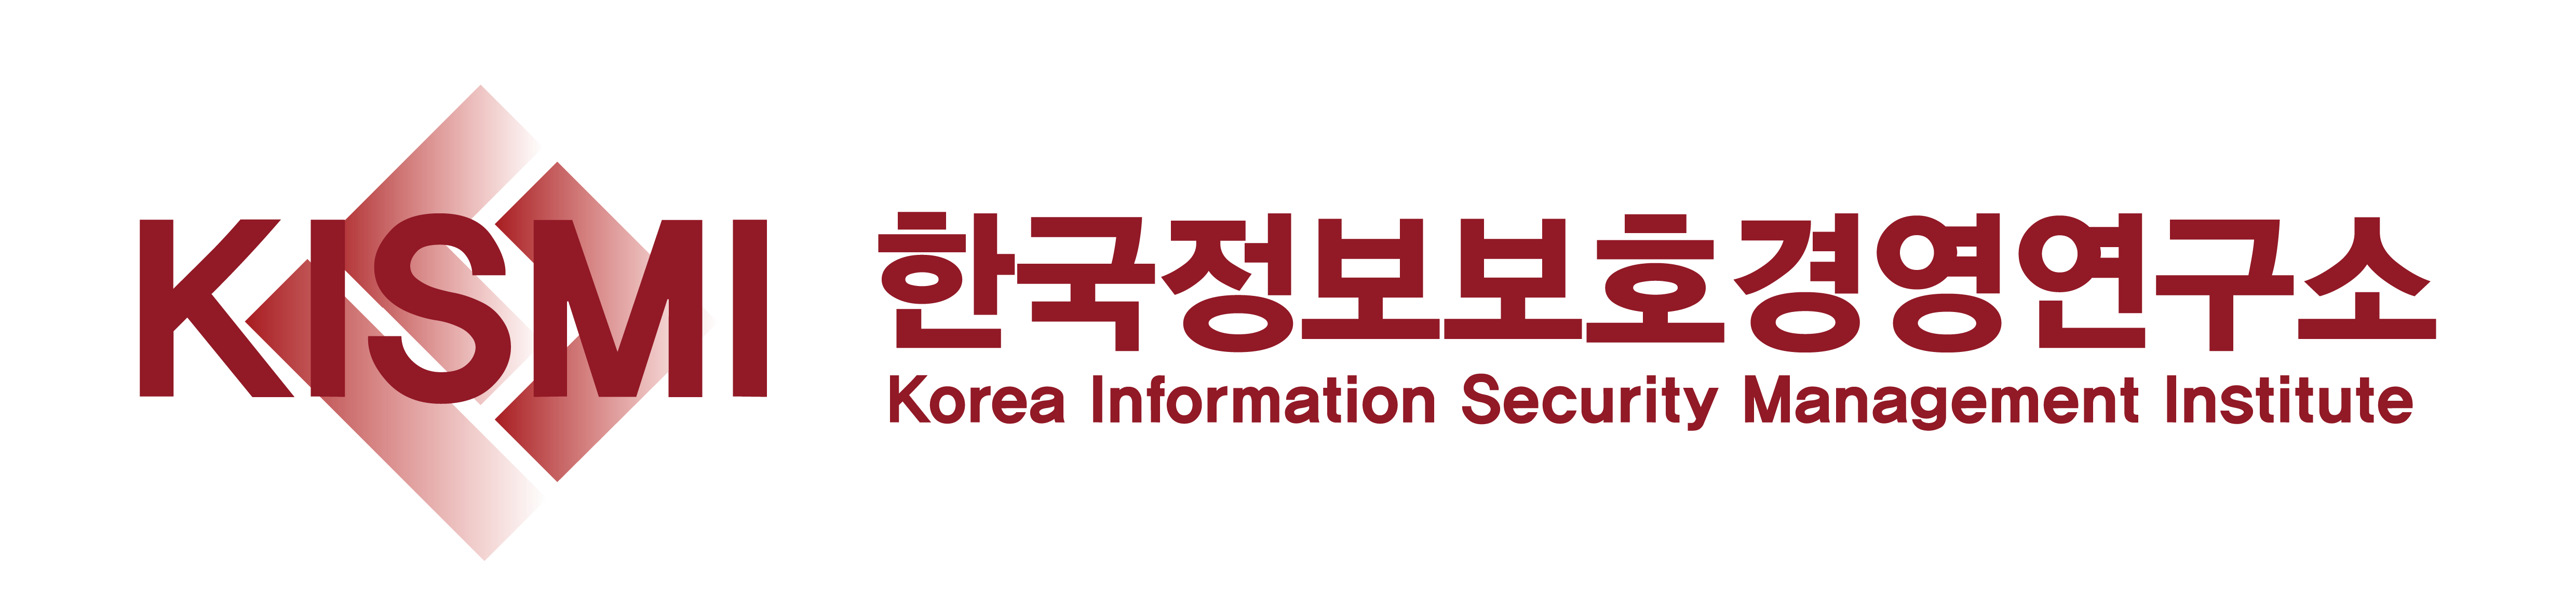 (주)한국정보보호경영연구소의 기업로고